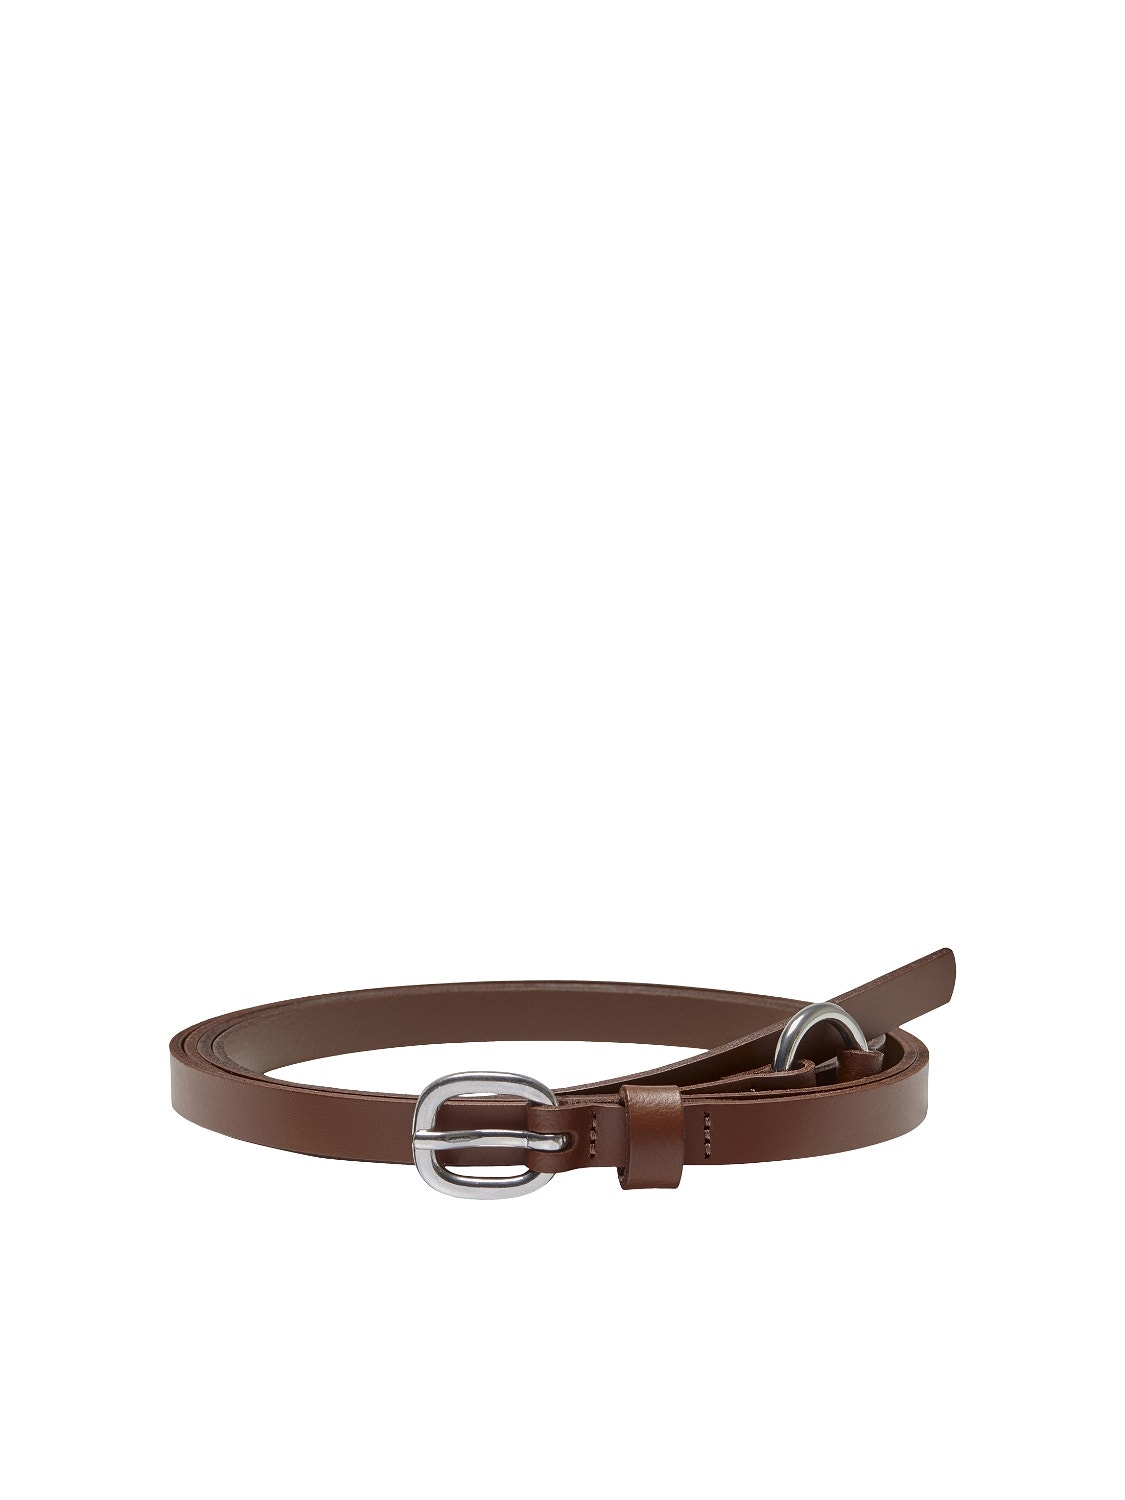 ONLY Belts -Cognac - 15266352